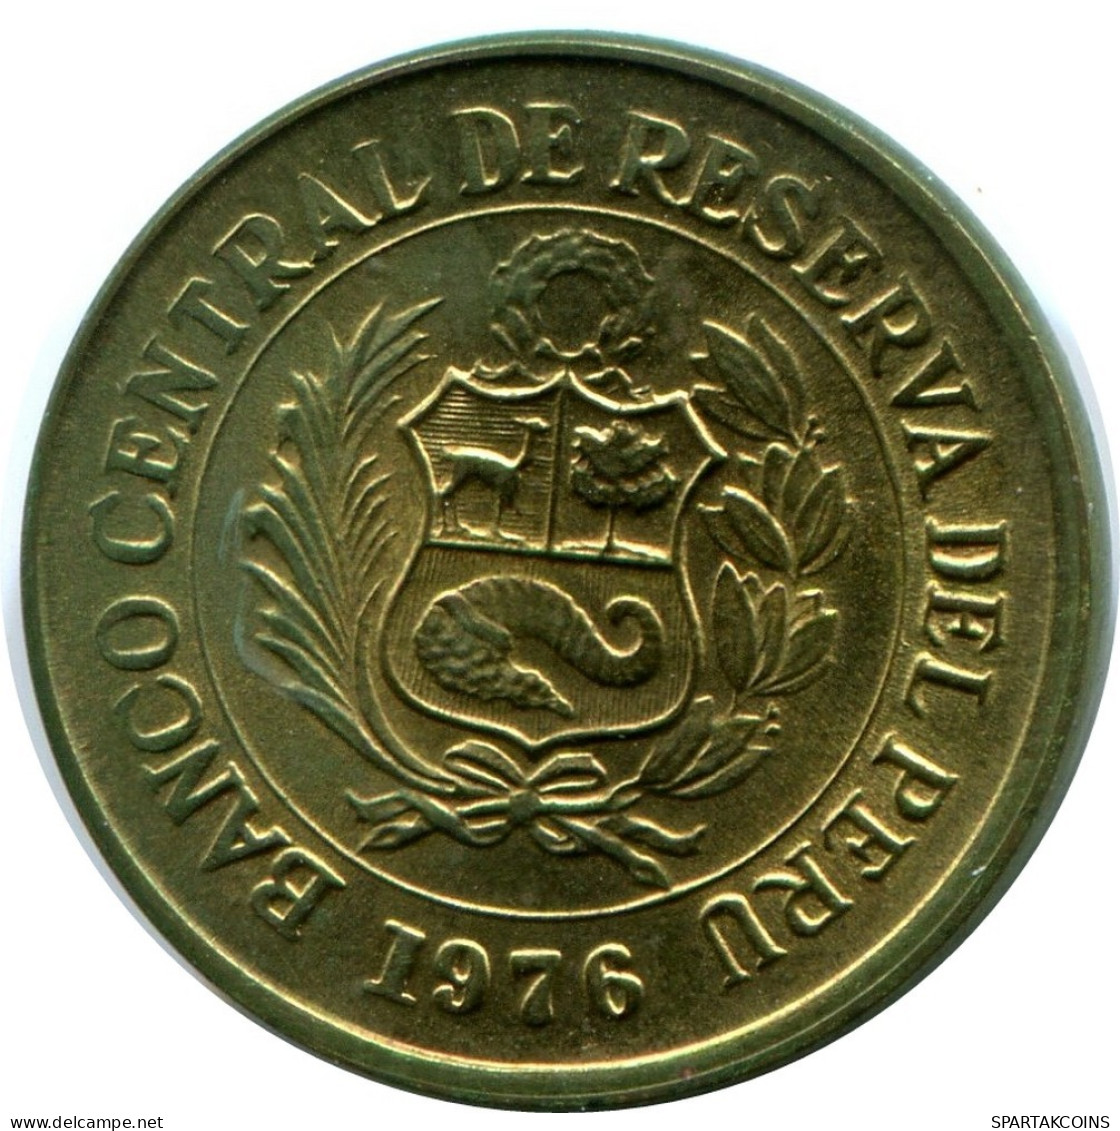 1/2 SOL 1976 PERUANO PERU Moneda #AZ074.E.A - Perú